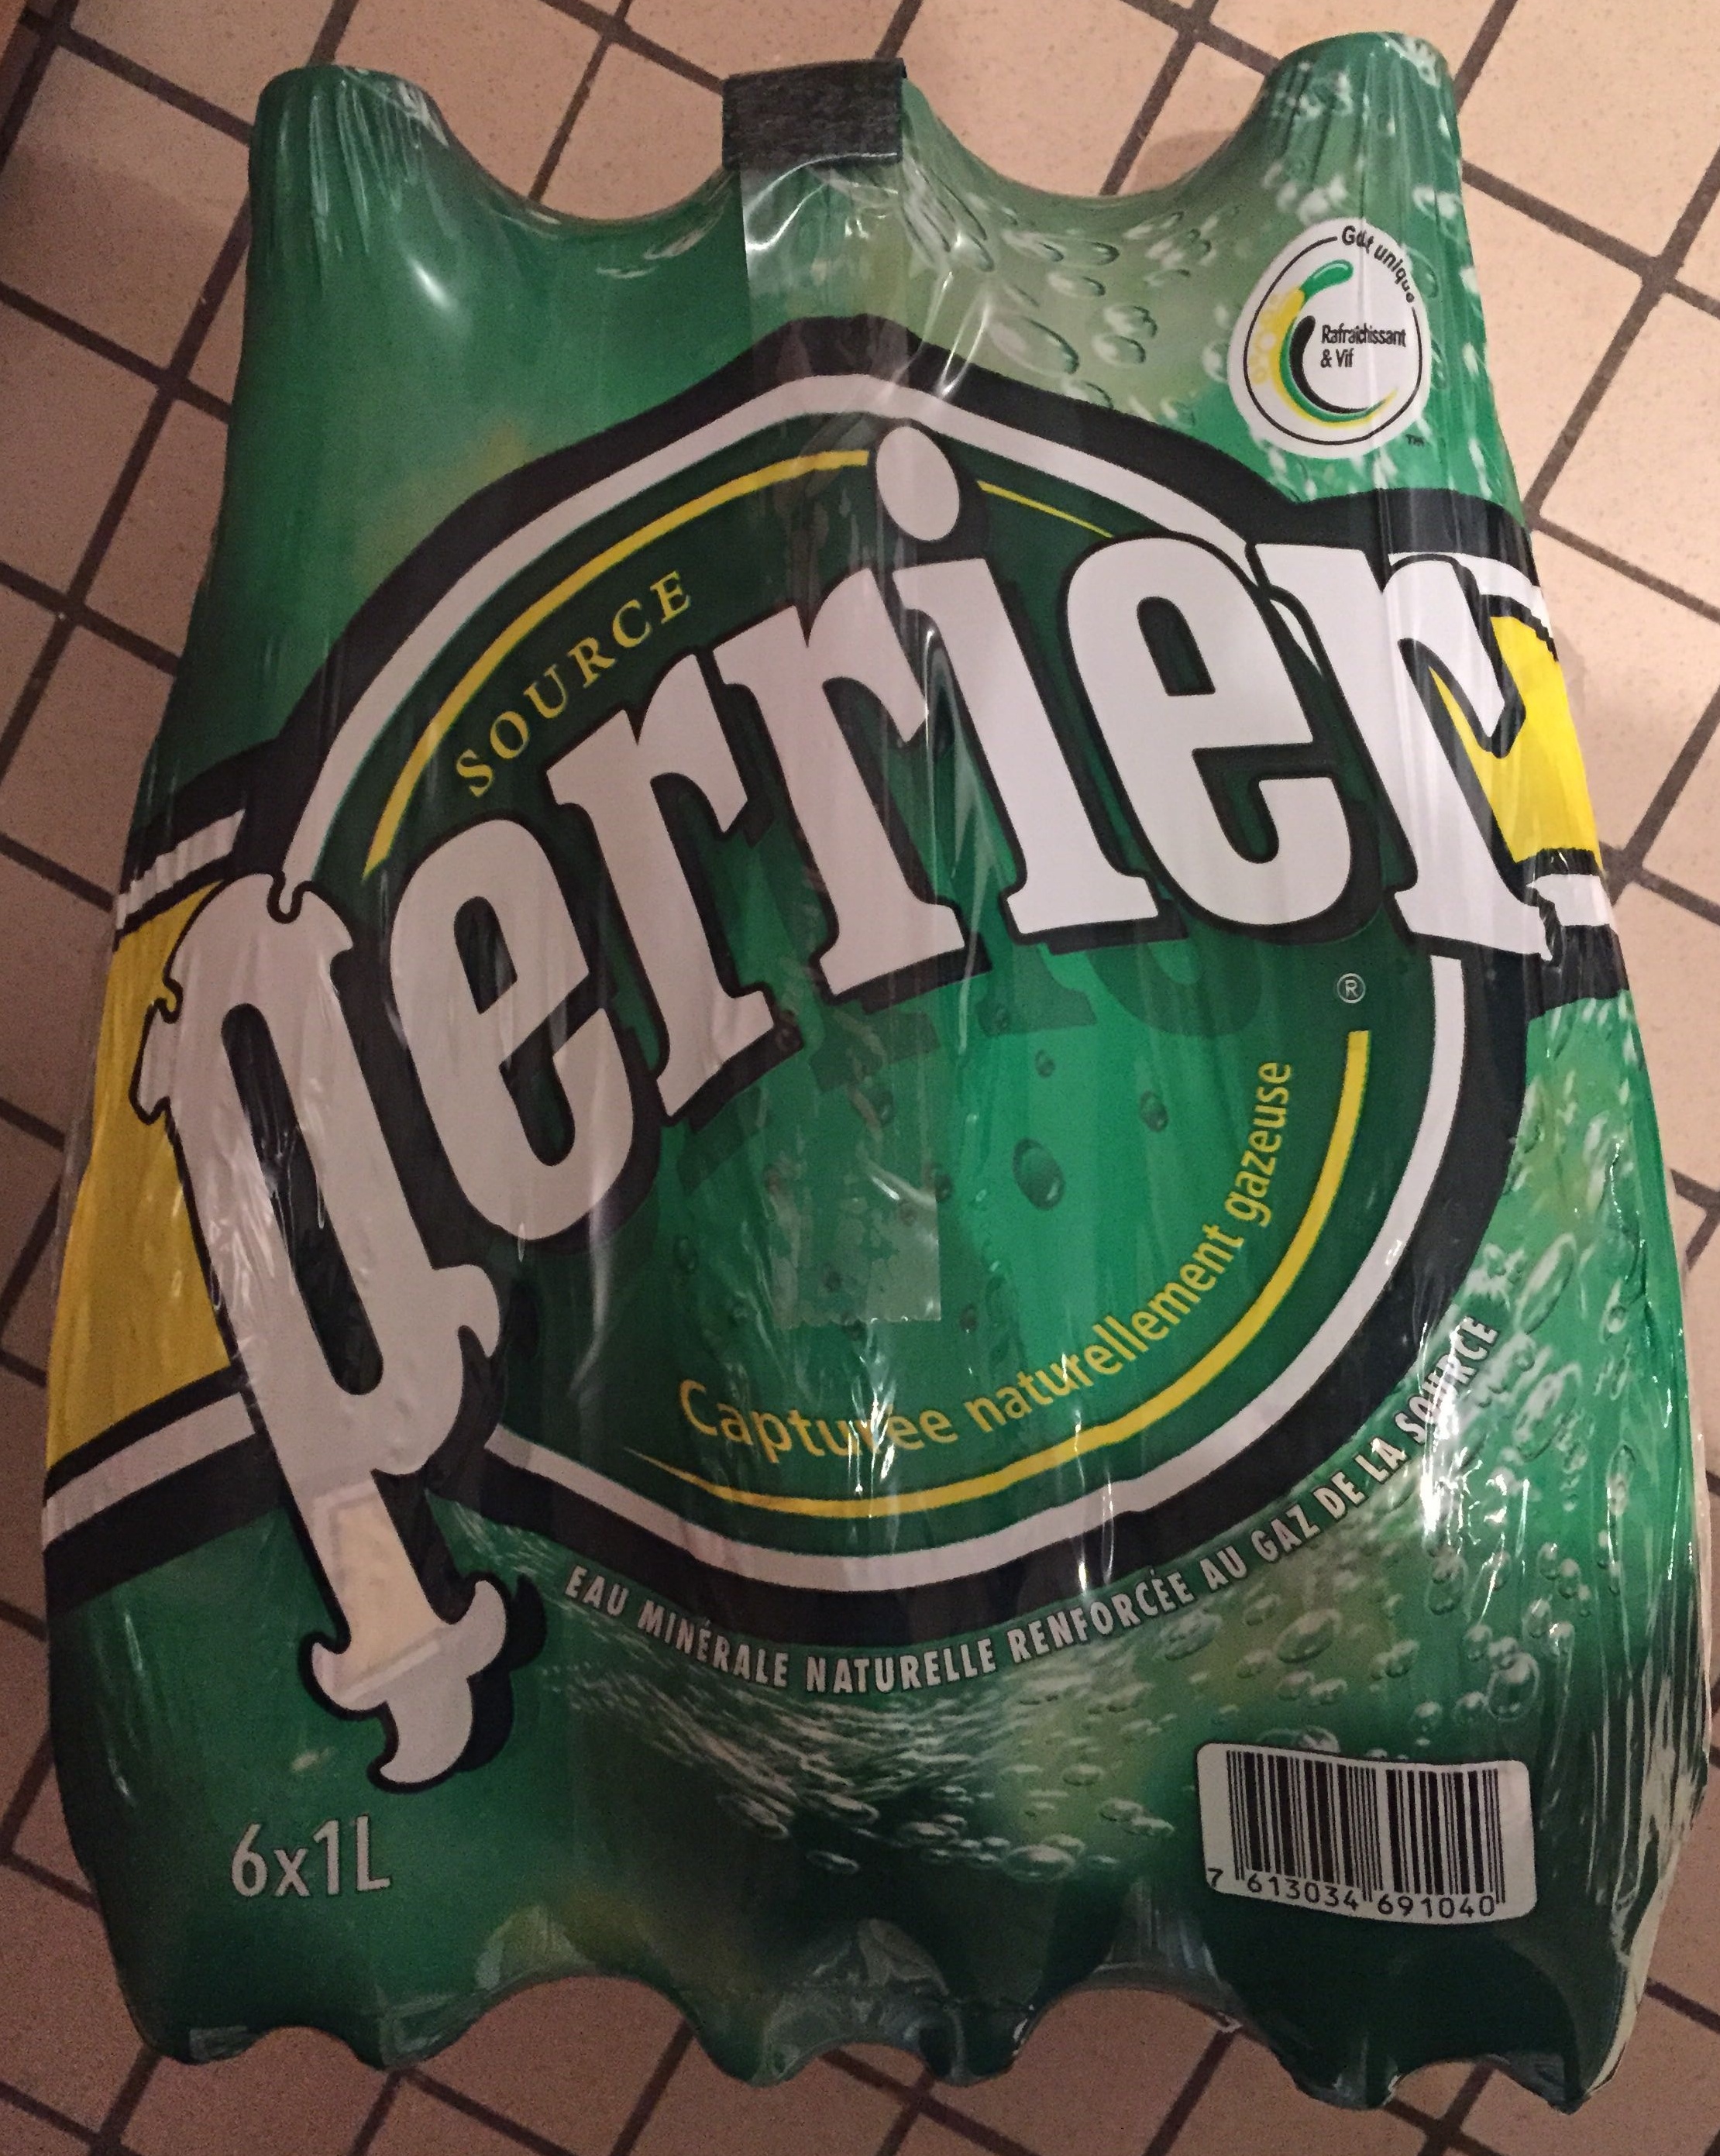 Perrier - Produit